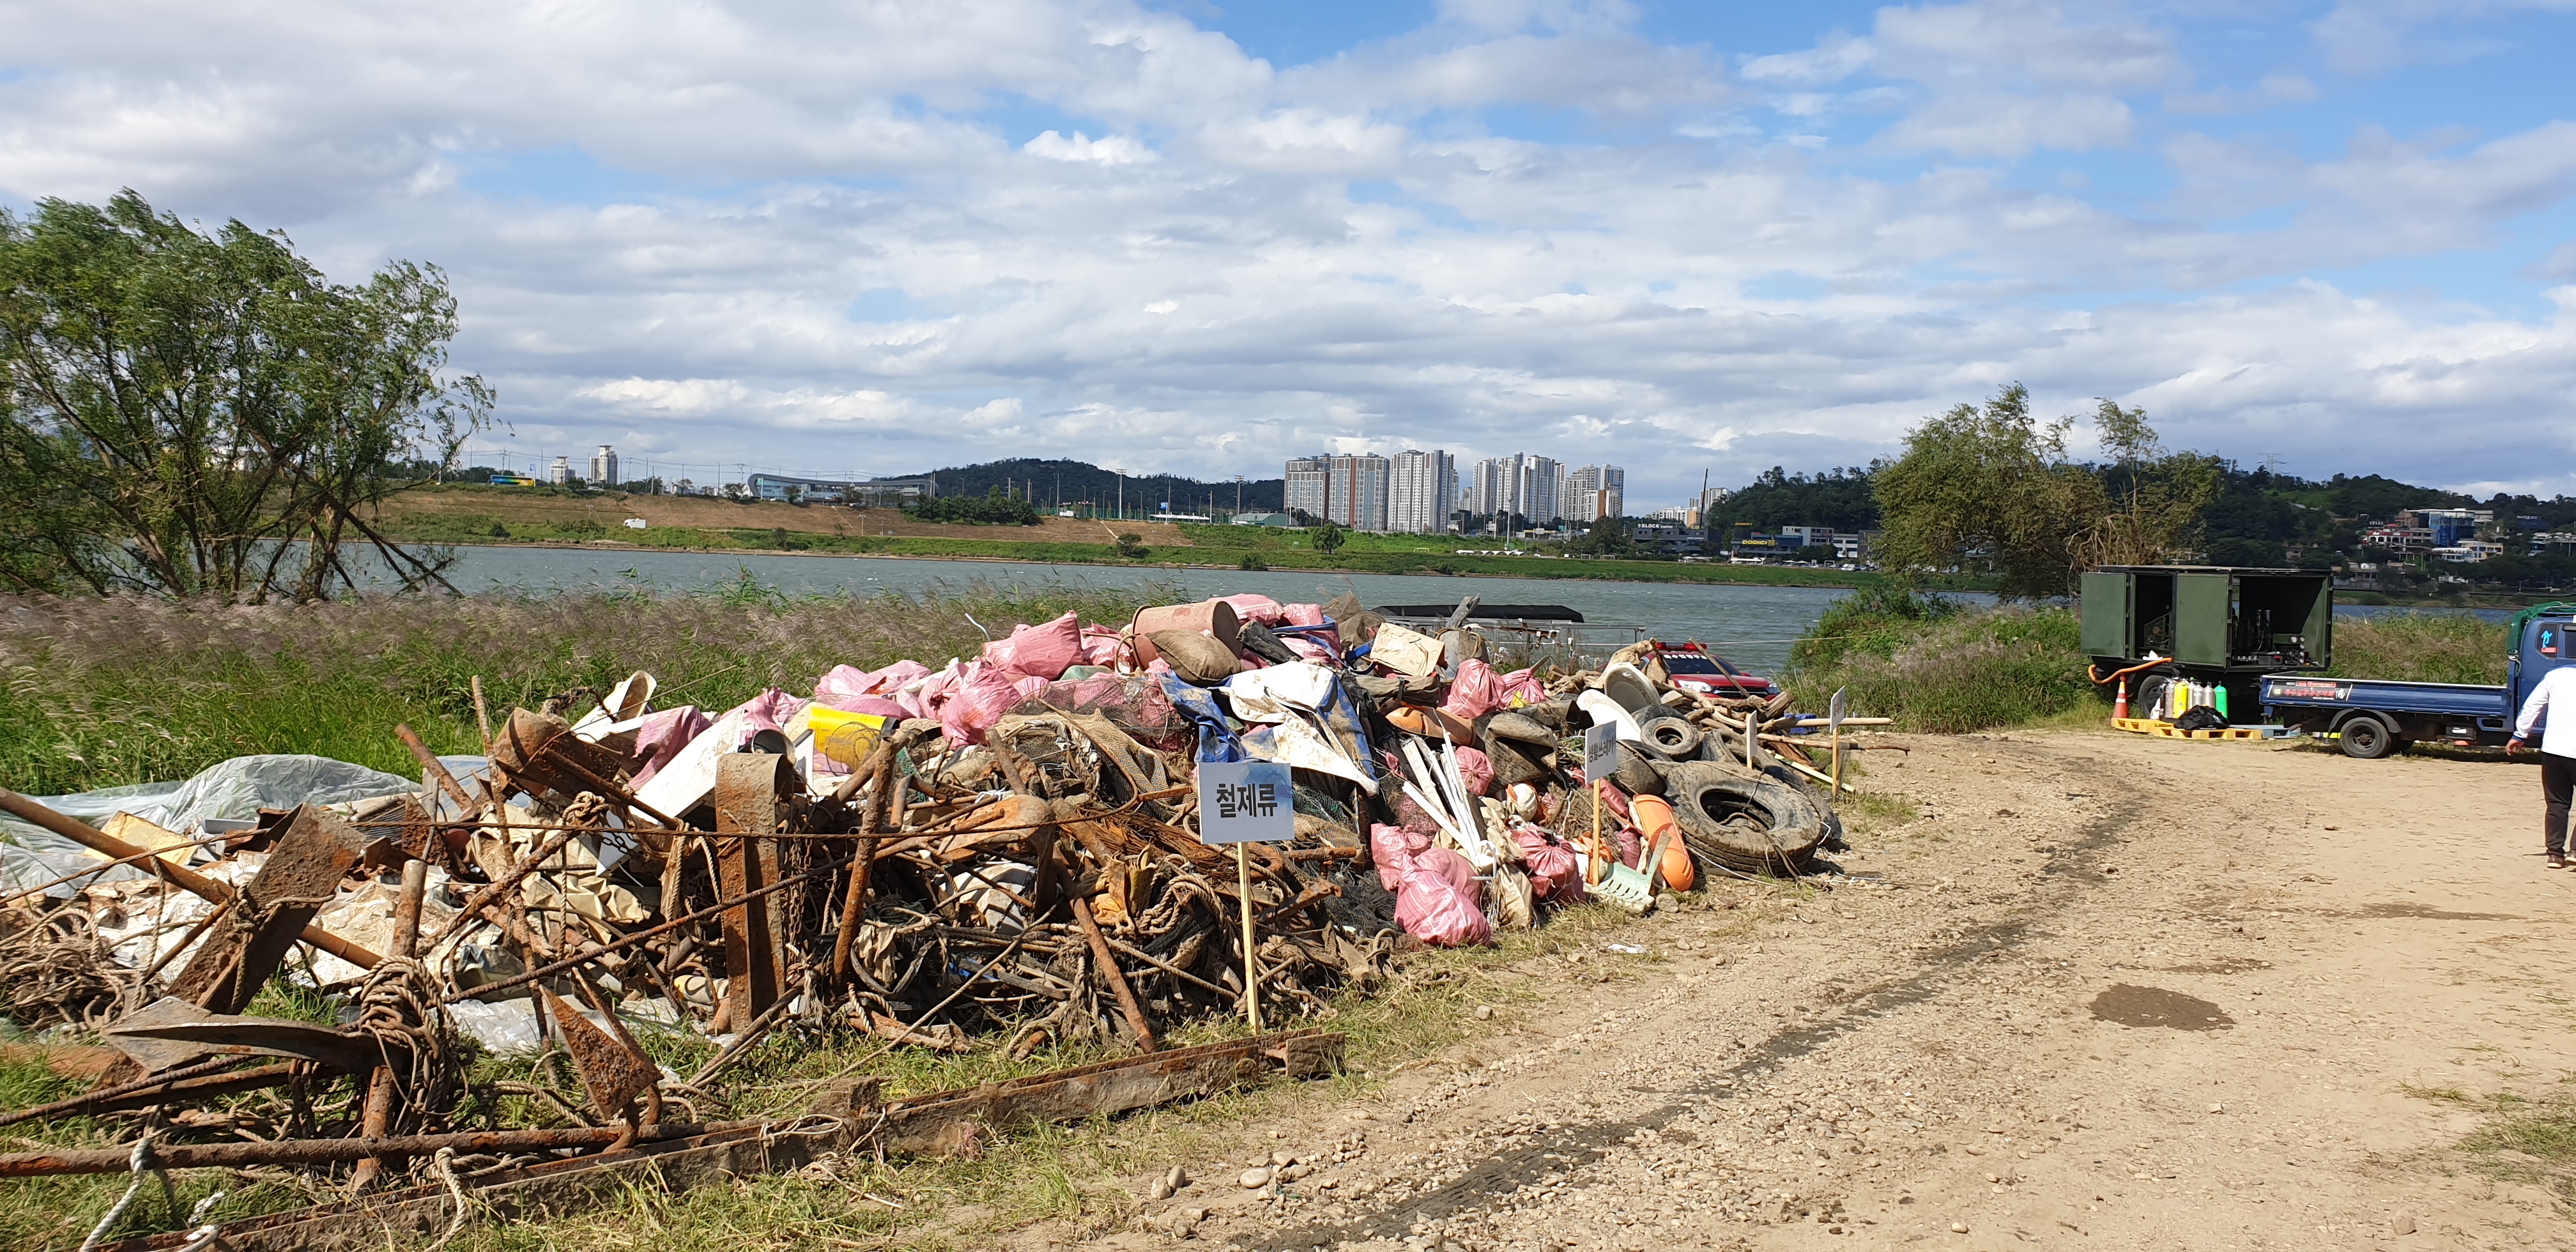 한강유역환경청이 실시한 한강 상수원 보호구역 내 수중쓰레기 정화활동으로 수거된 쓰레기 적치상황